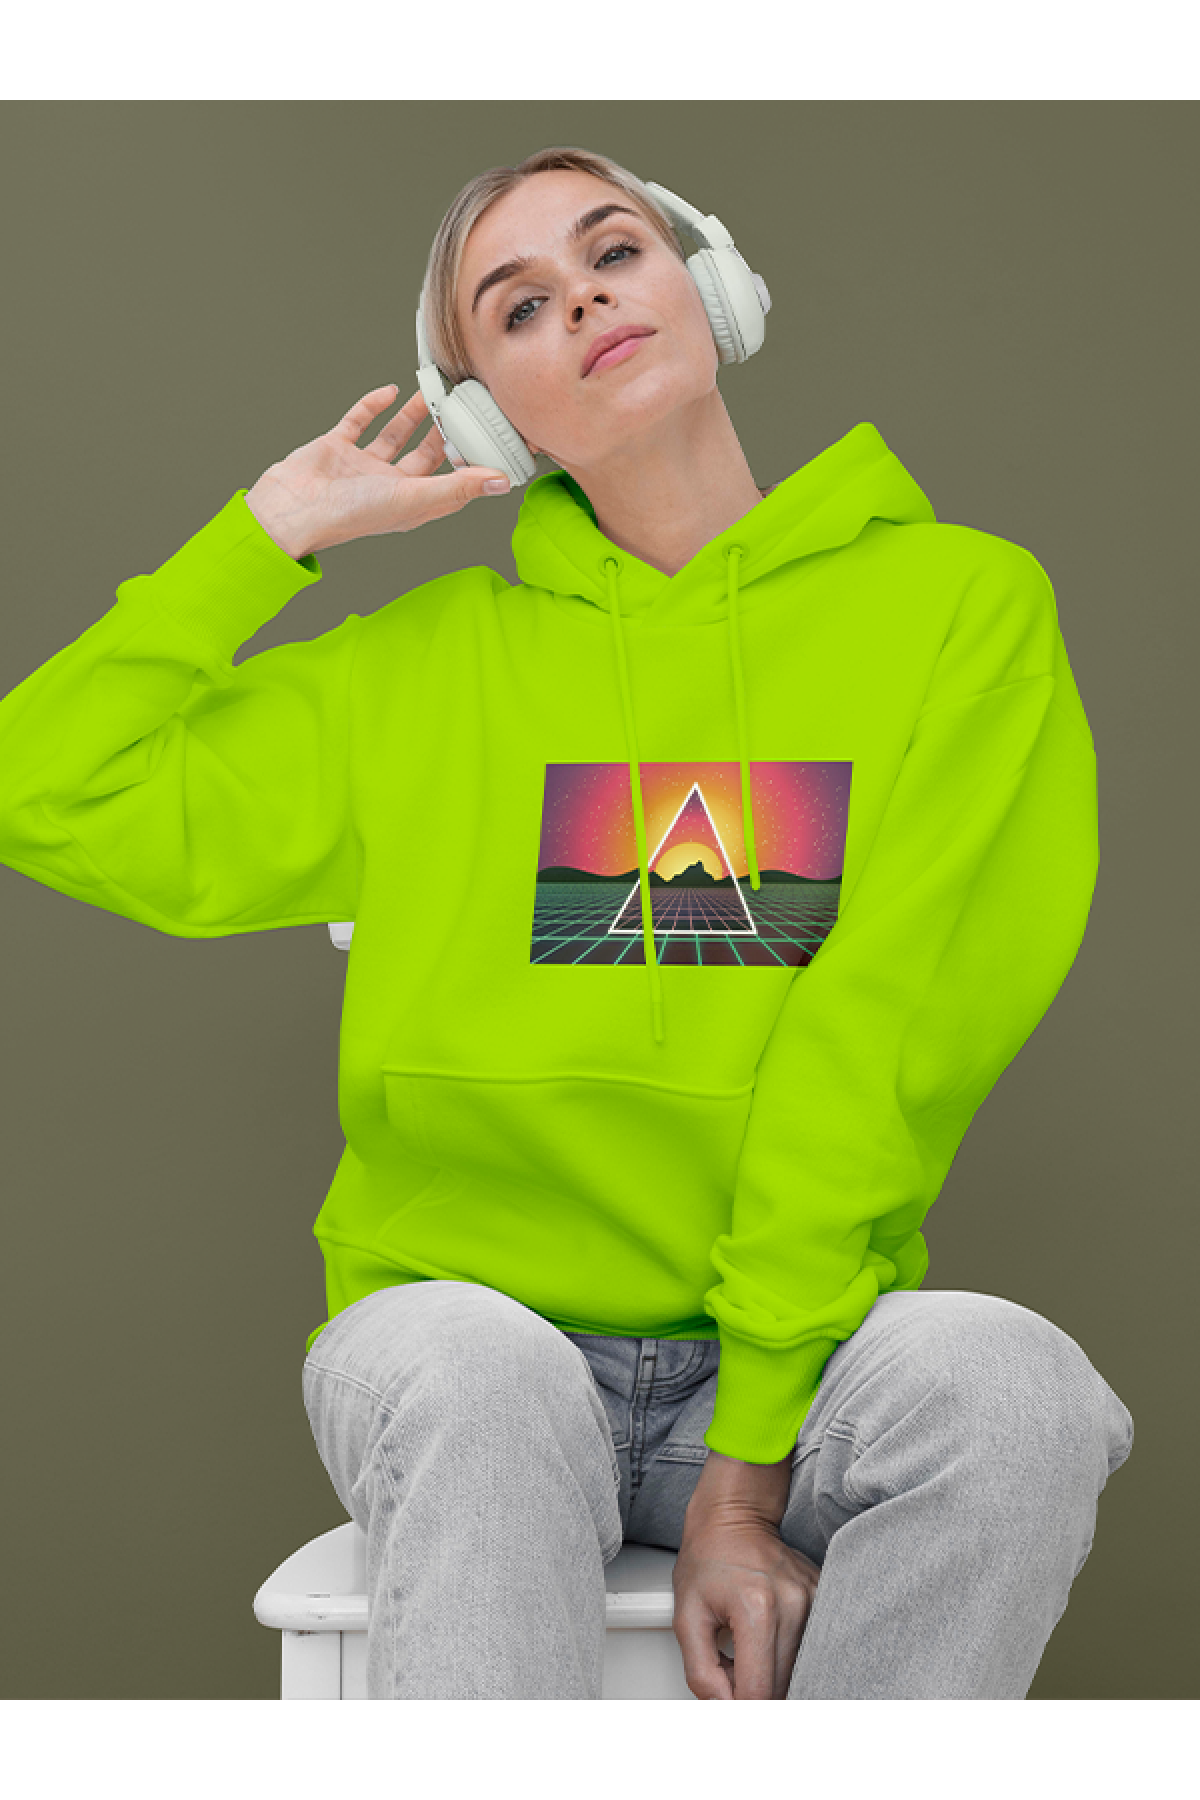 MIJUSTORE Vapor Wave Renkli Design Baskılı Tasarım 3 İplik Kalın Neon Sarı Hoodie Sweatshirt